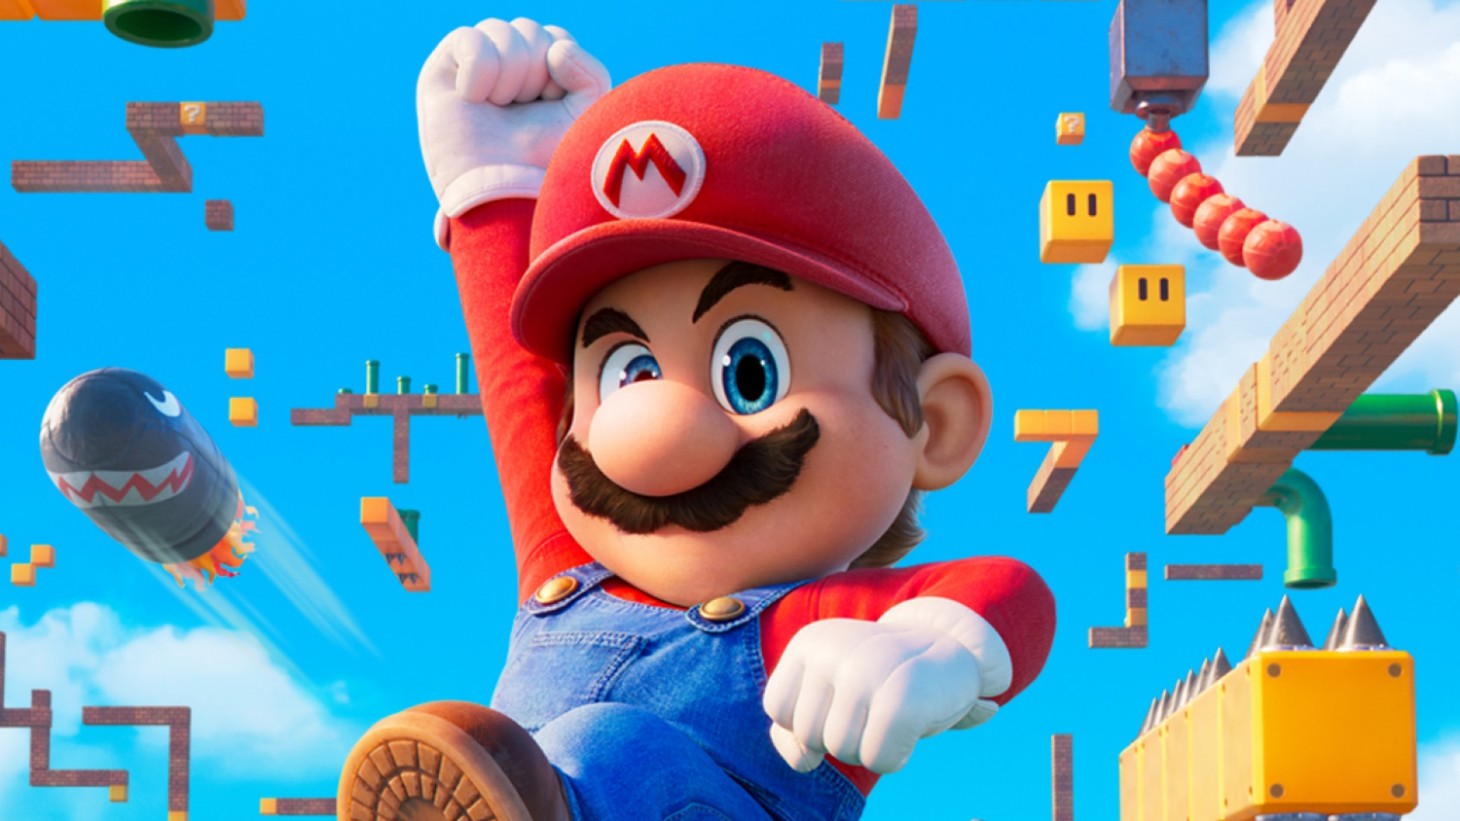 Nintendo revela 'Super Mario RPG', remake de clássico de 1996 - Tecnologia  - Estado de Minas